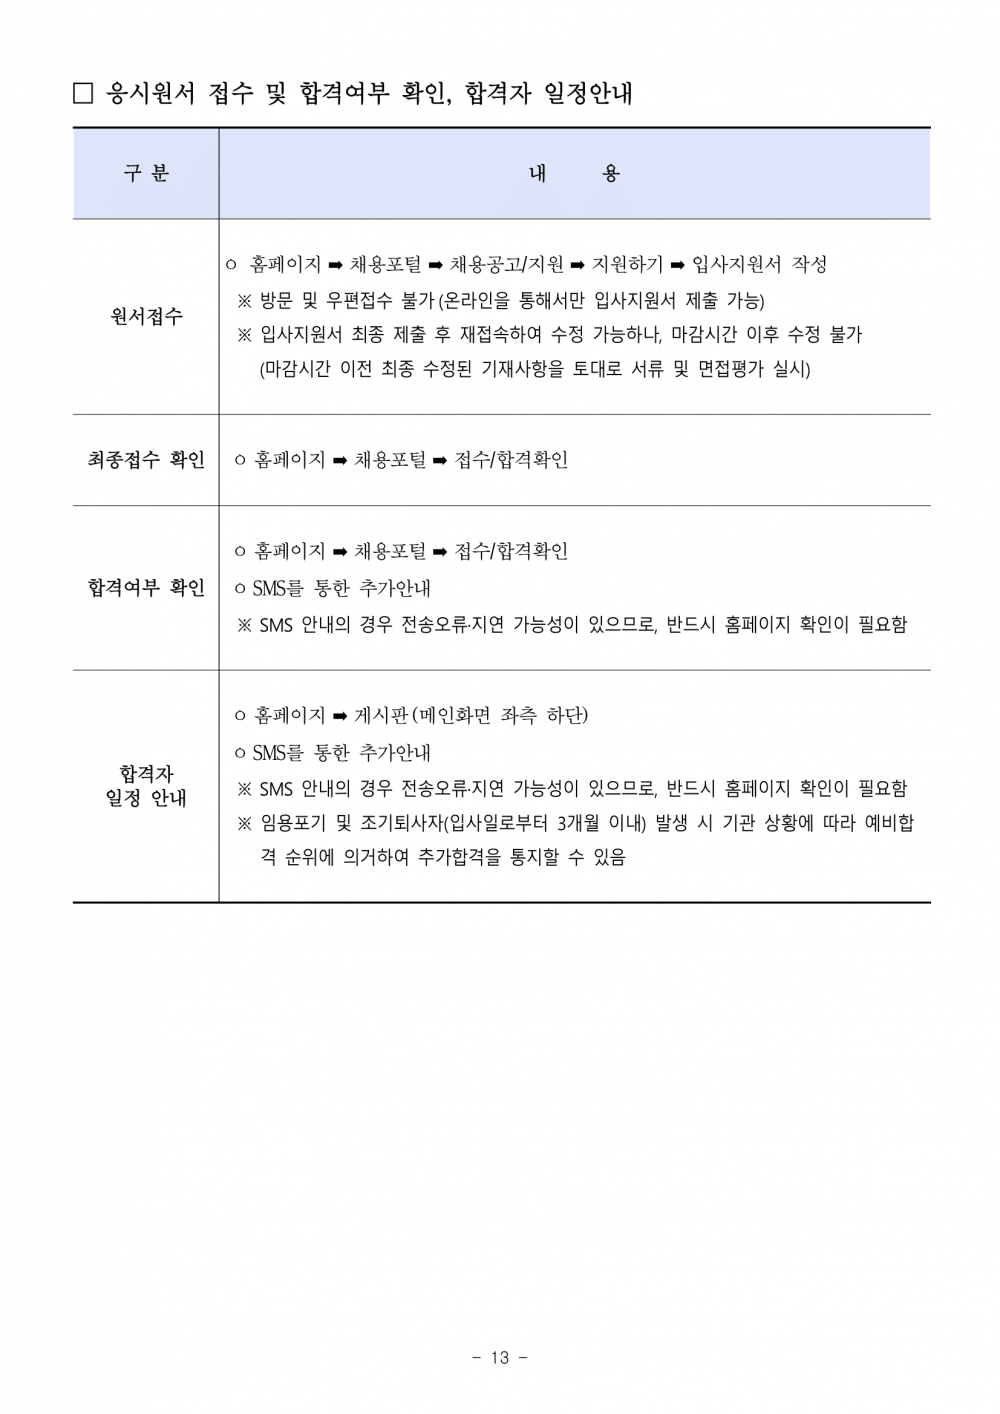 우체국금융개발원_채용공고문-13